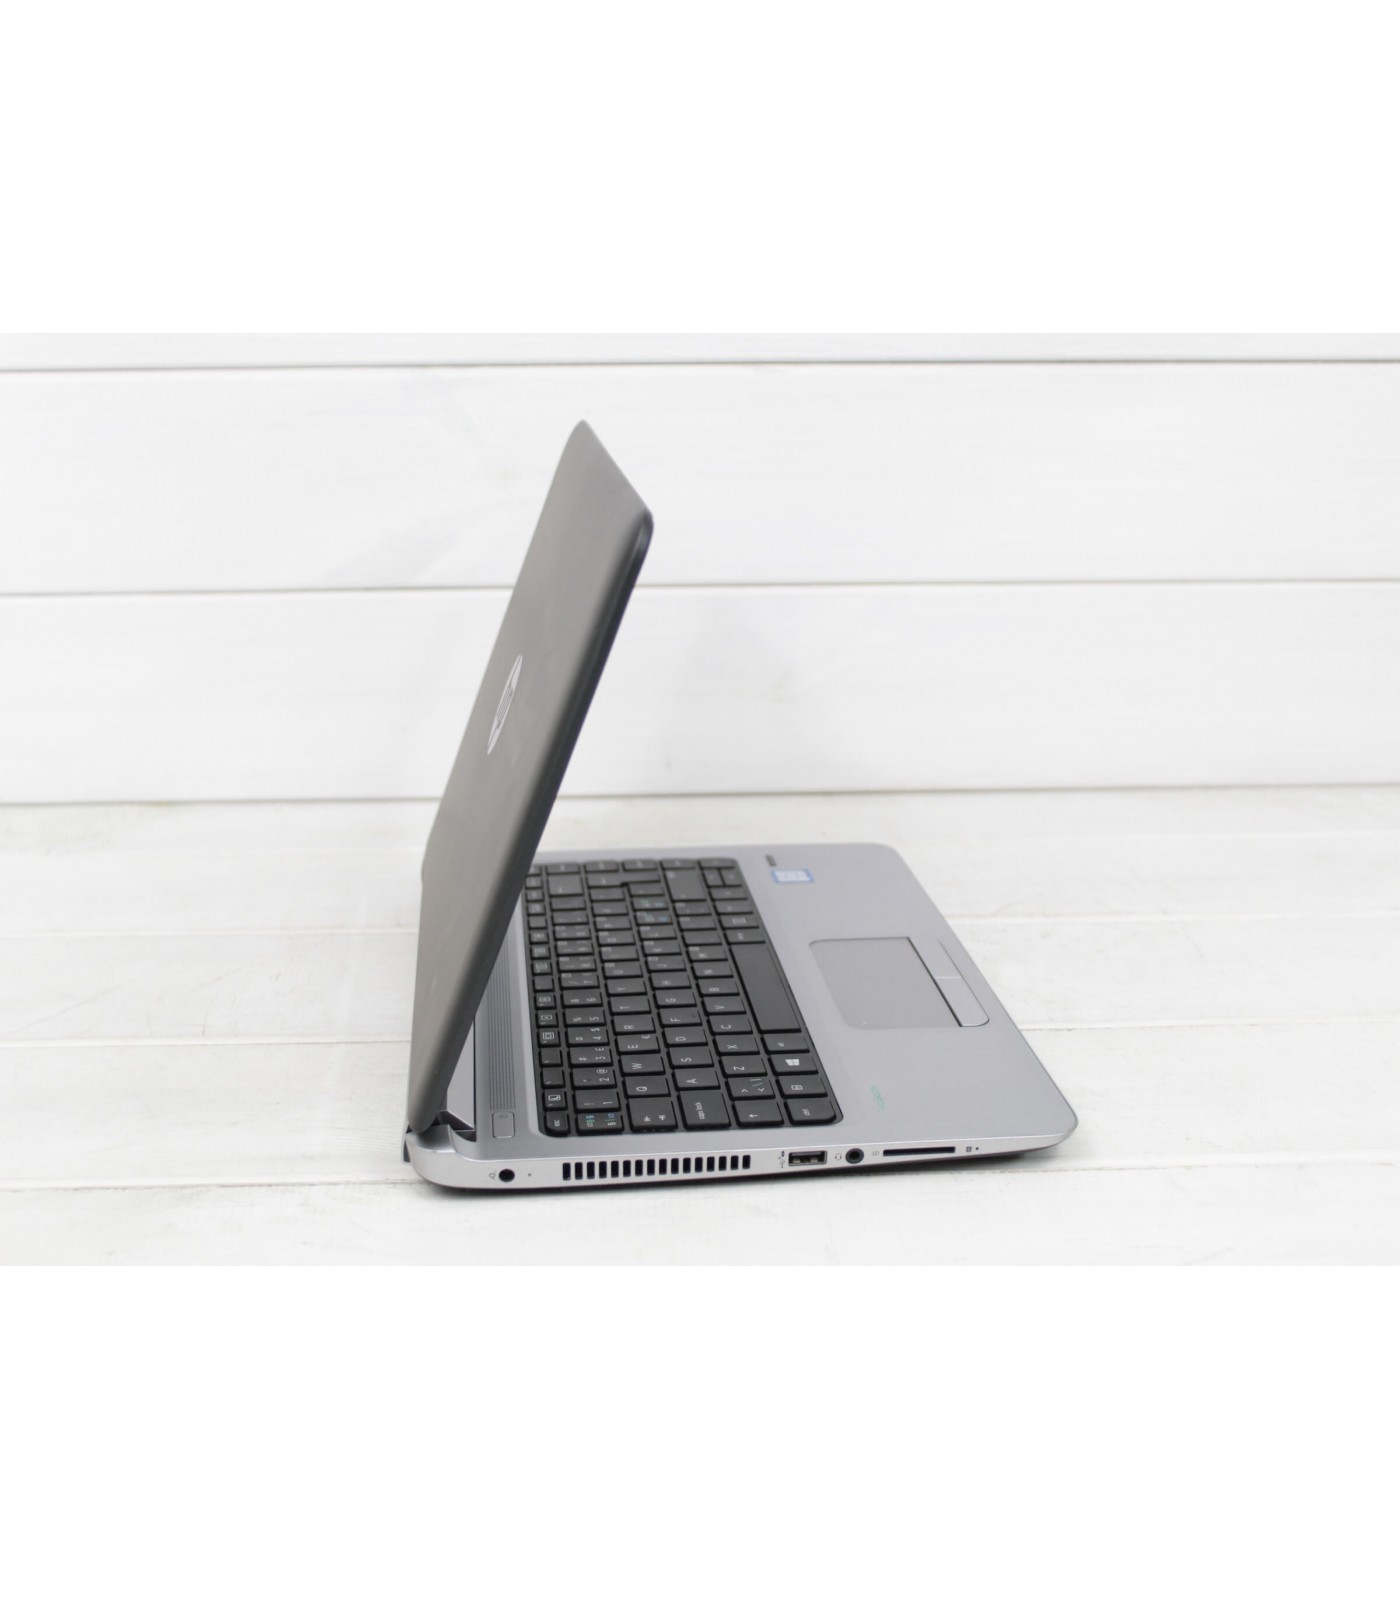 Poleasingowy laptop HP ProBook 430 G3 z Intel Core i5-6200U w klasie A.